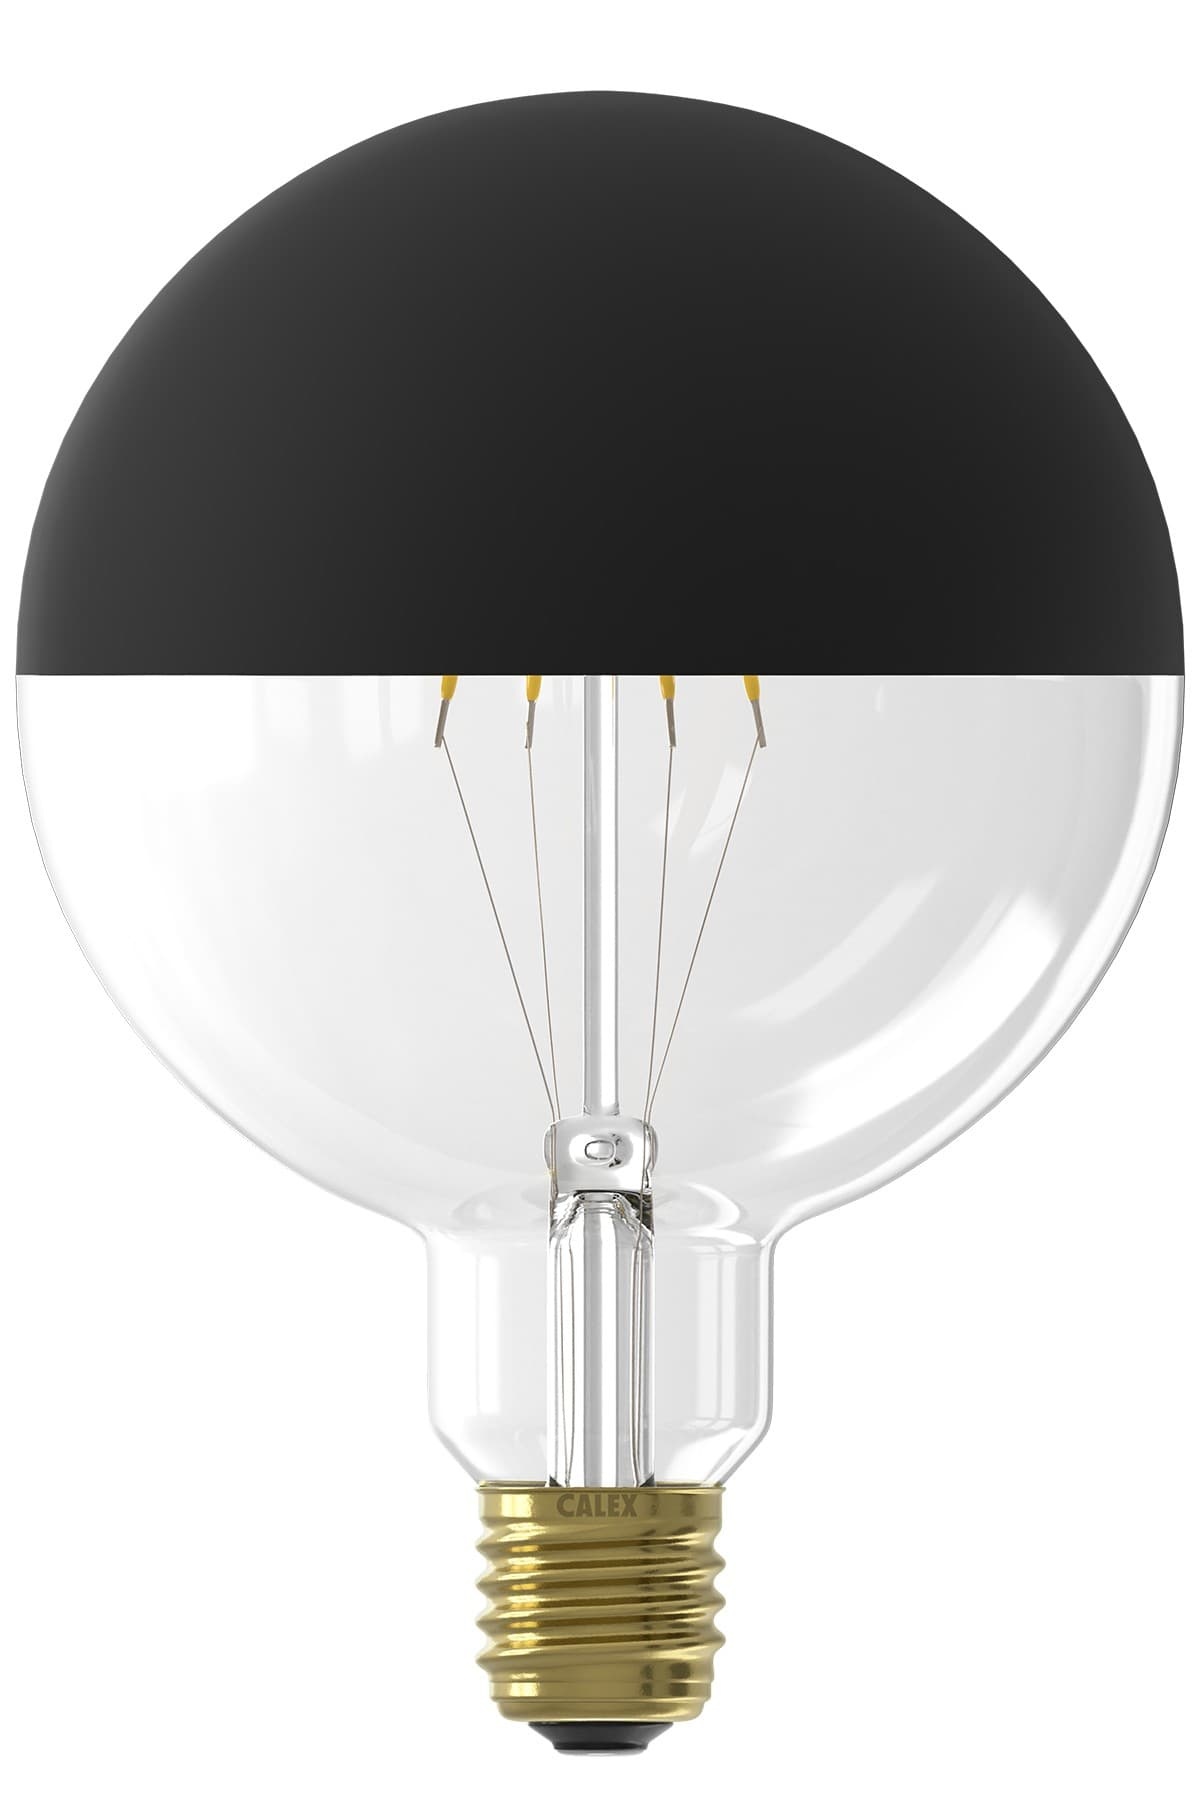 Berouw influenza baai LED lamp volglas Filament Kopspiegel G125 Globelamp Zwart E27 - Kynda Light